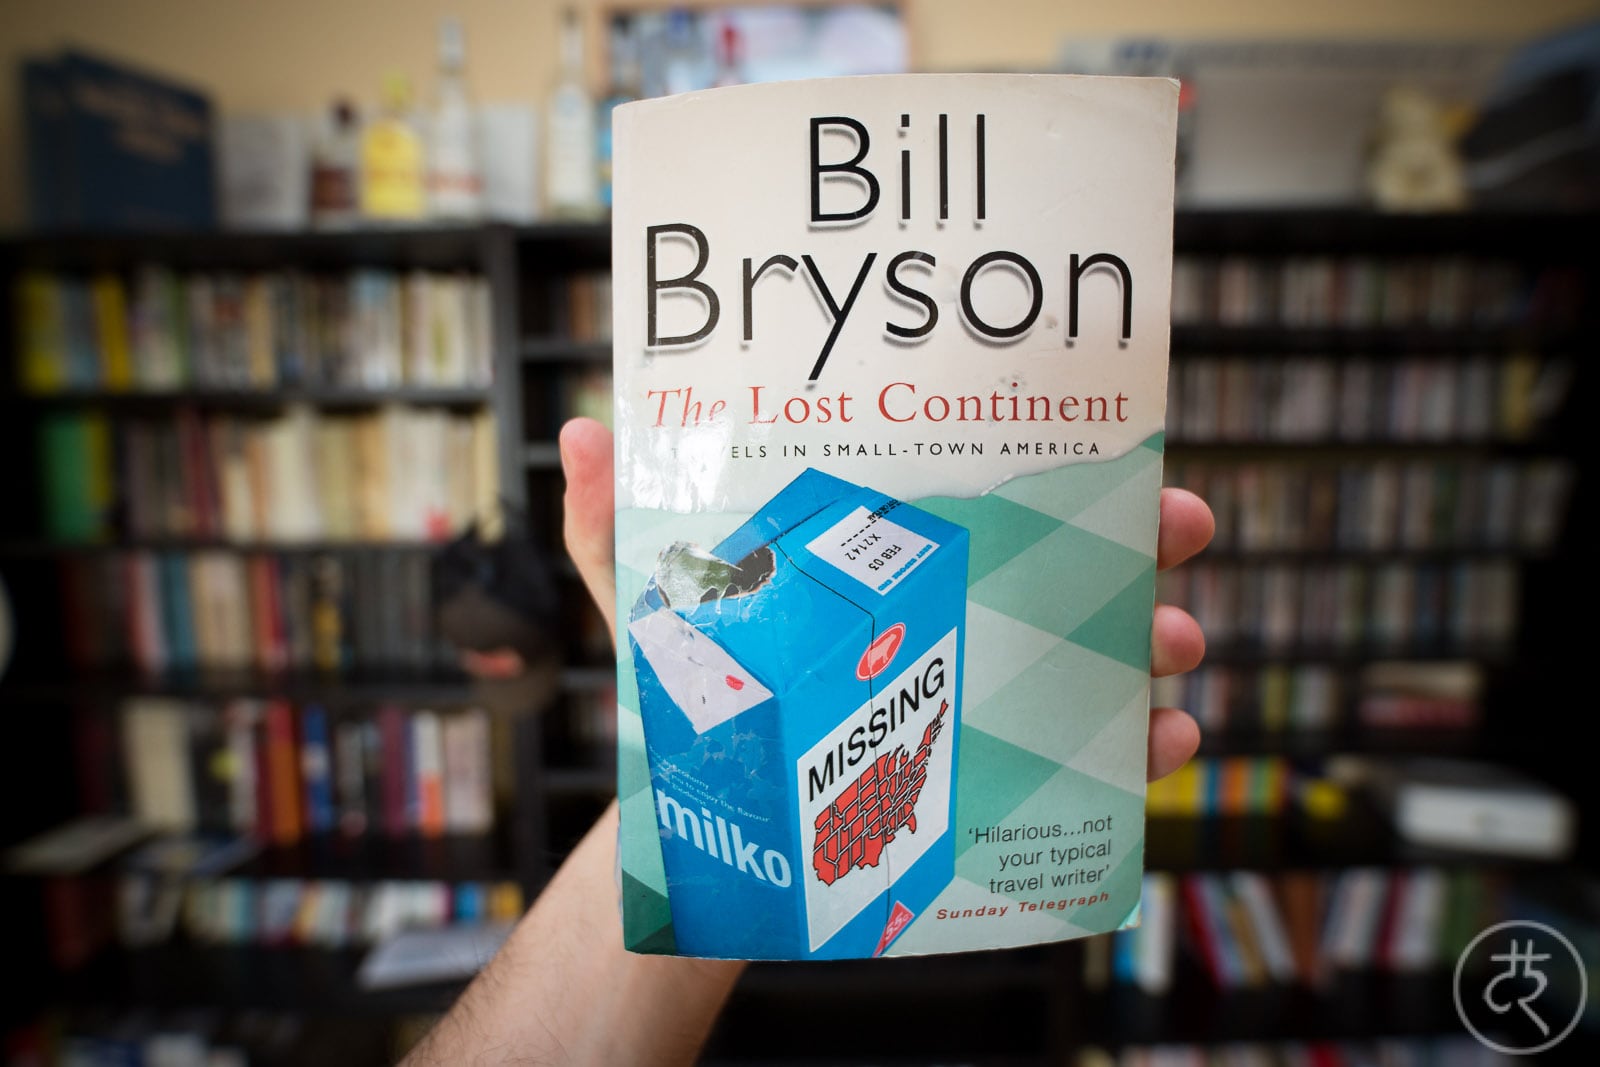 Bill Bryson's "The Lost Continent"